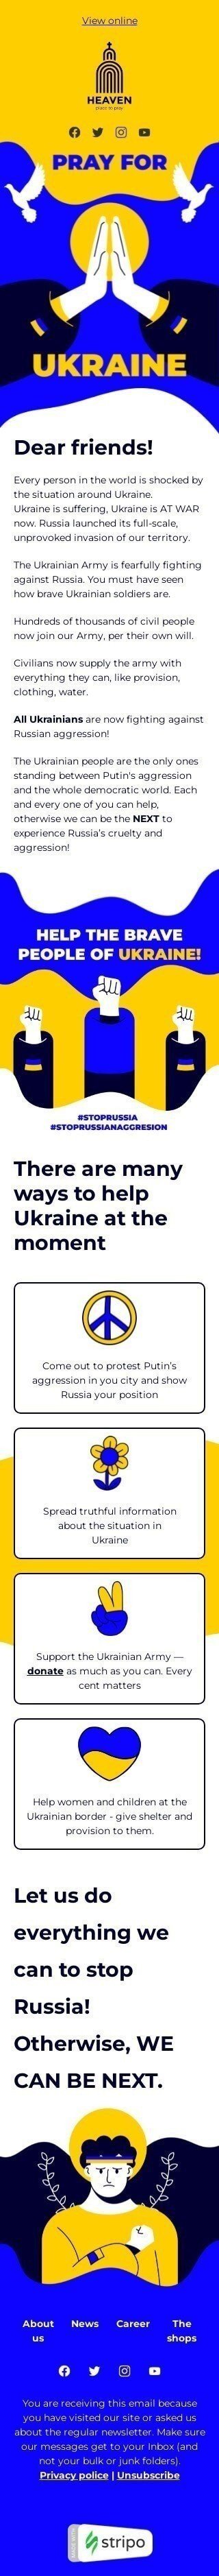 The “Stand with Ukraine” email template Ansicht auf Mobilgeräten